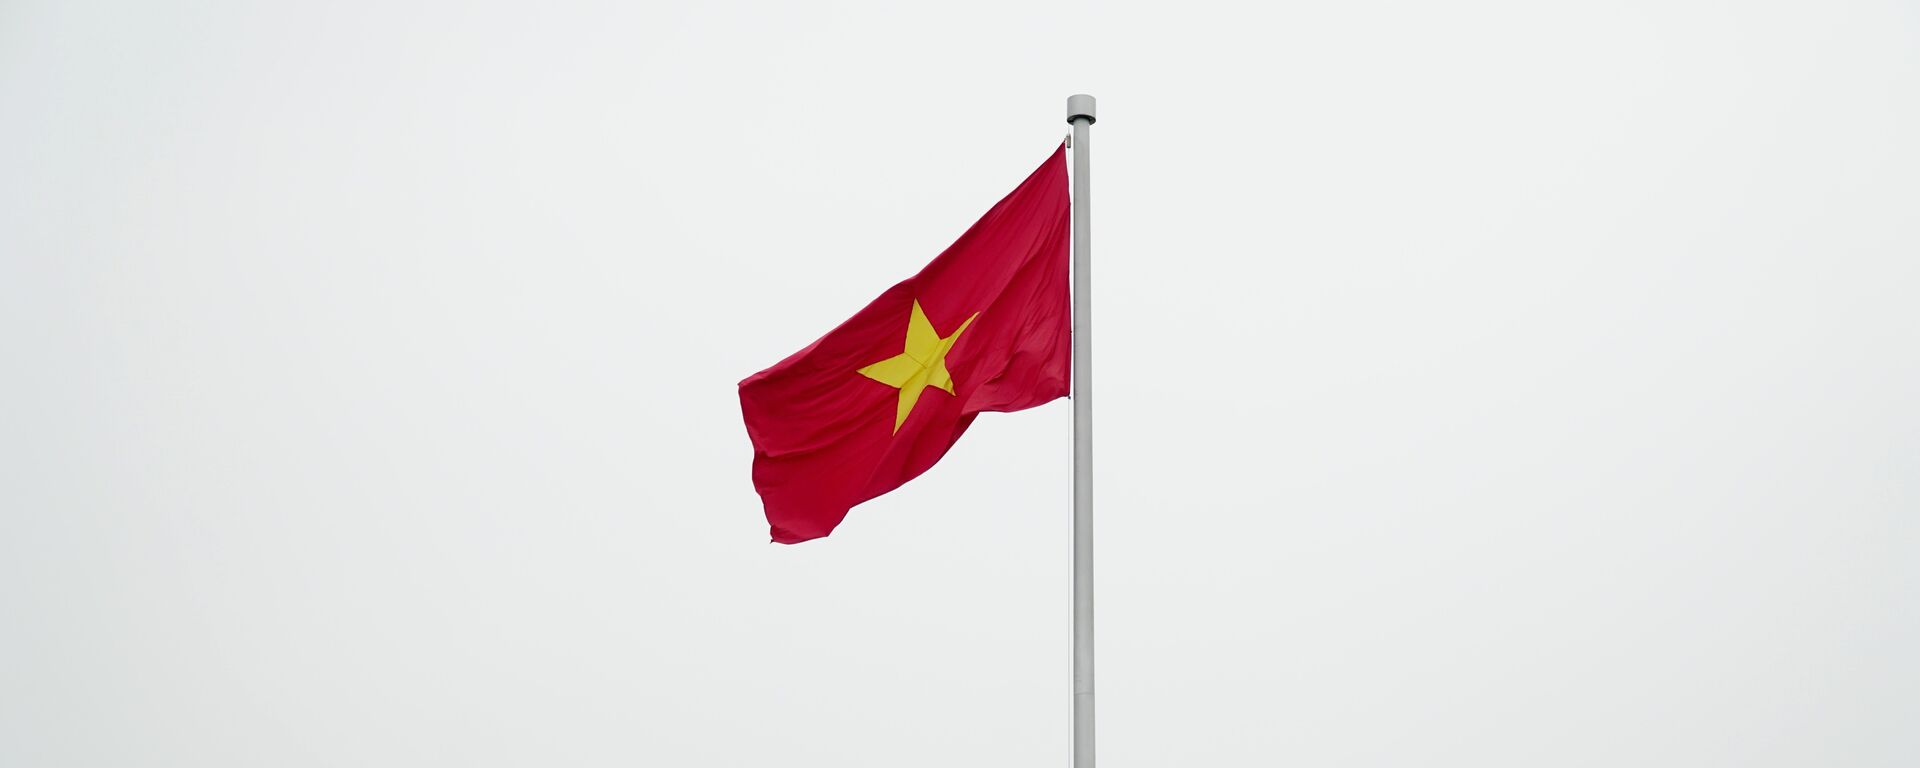 Quốc kỳ Việt Nam - Sputnik Việt Nam, 1920, 19.08.2019